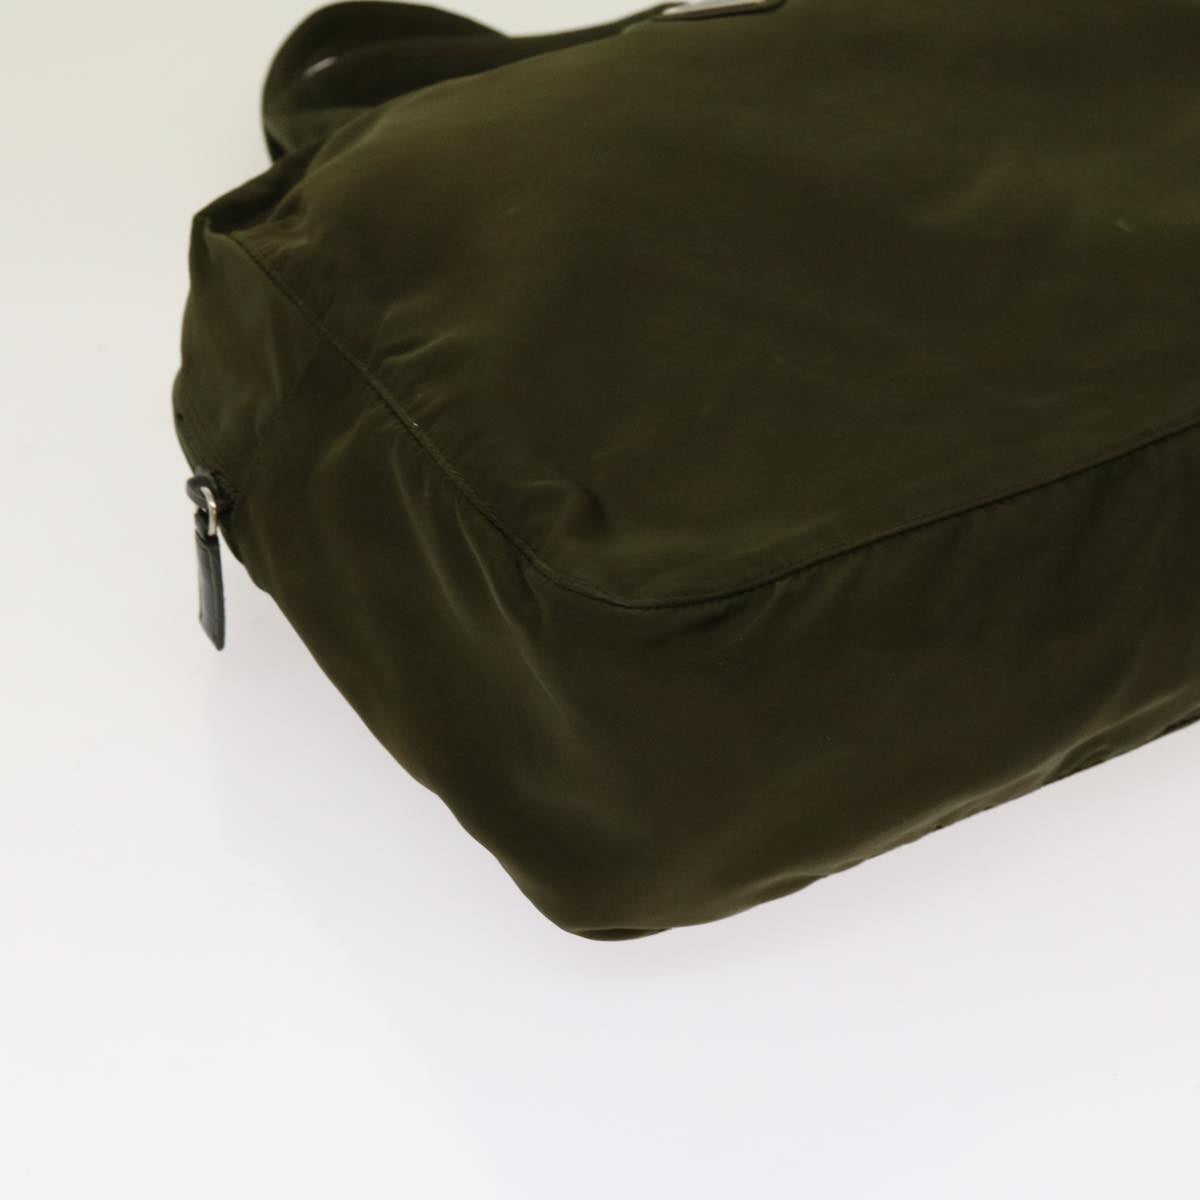 PRADA Hand Bag Nylon Khaki Auth 69353